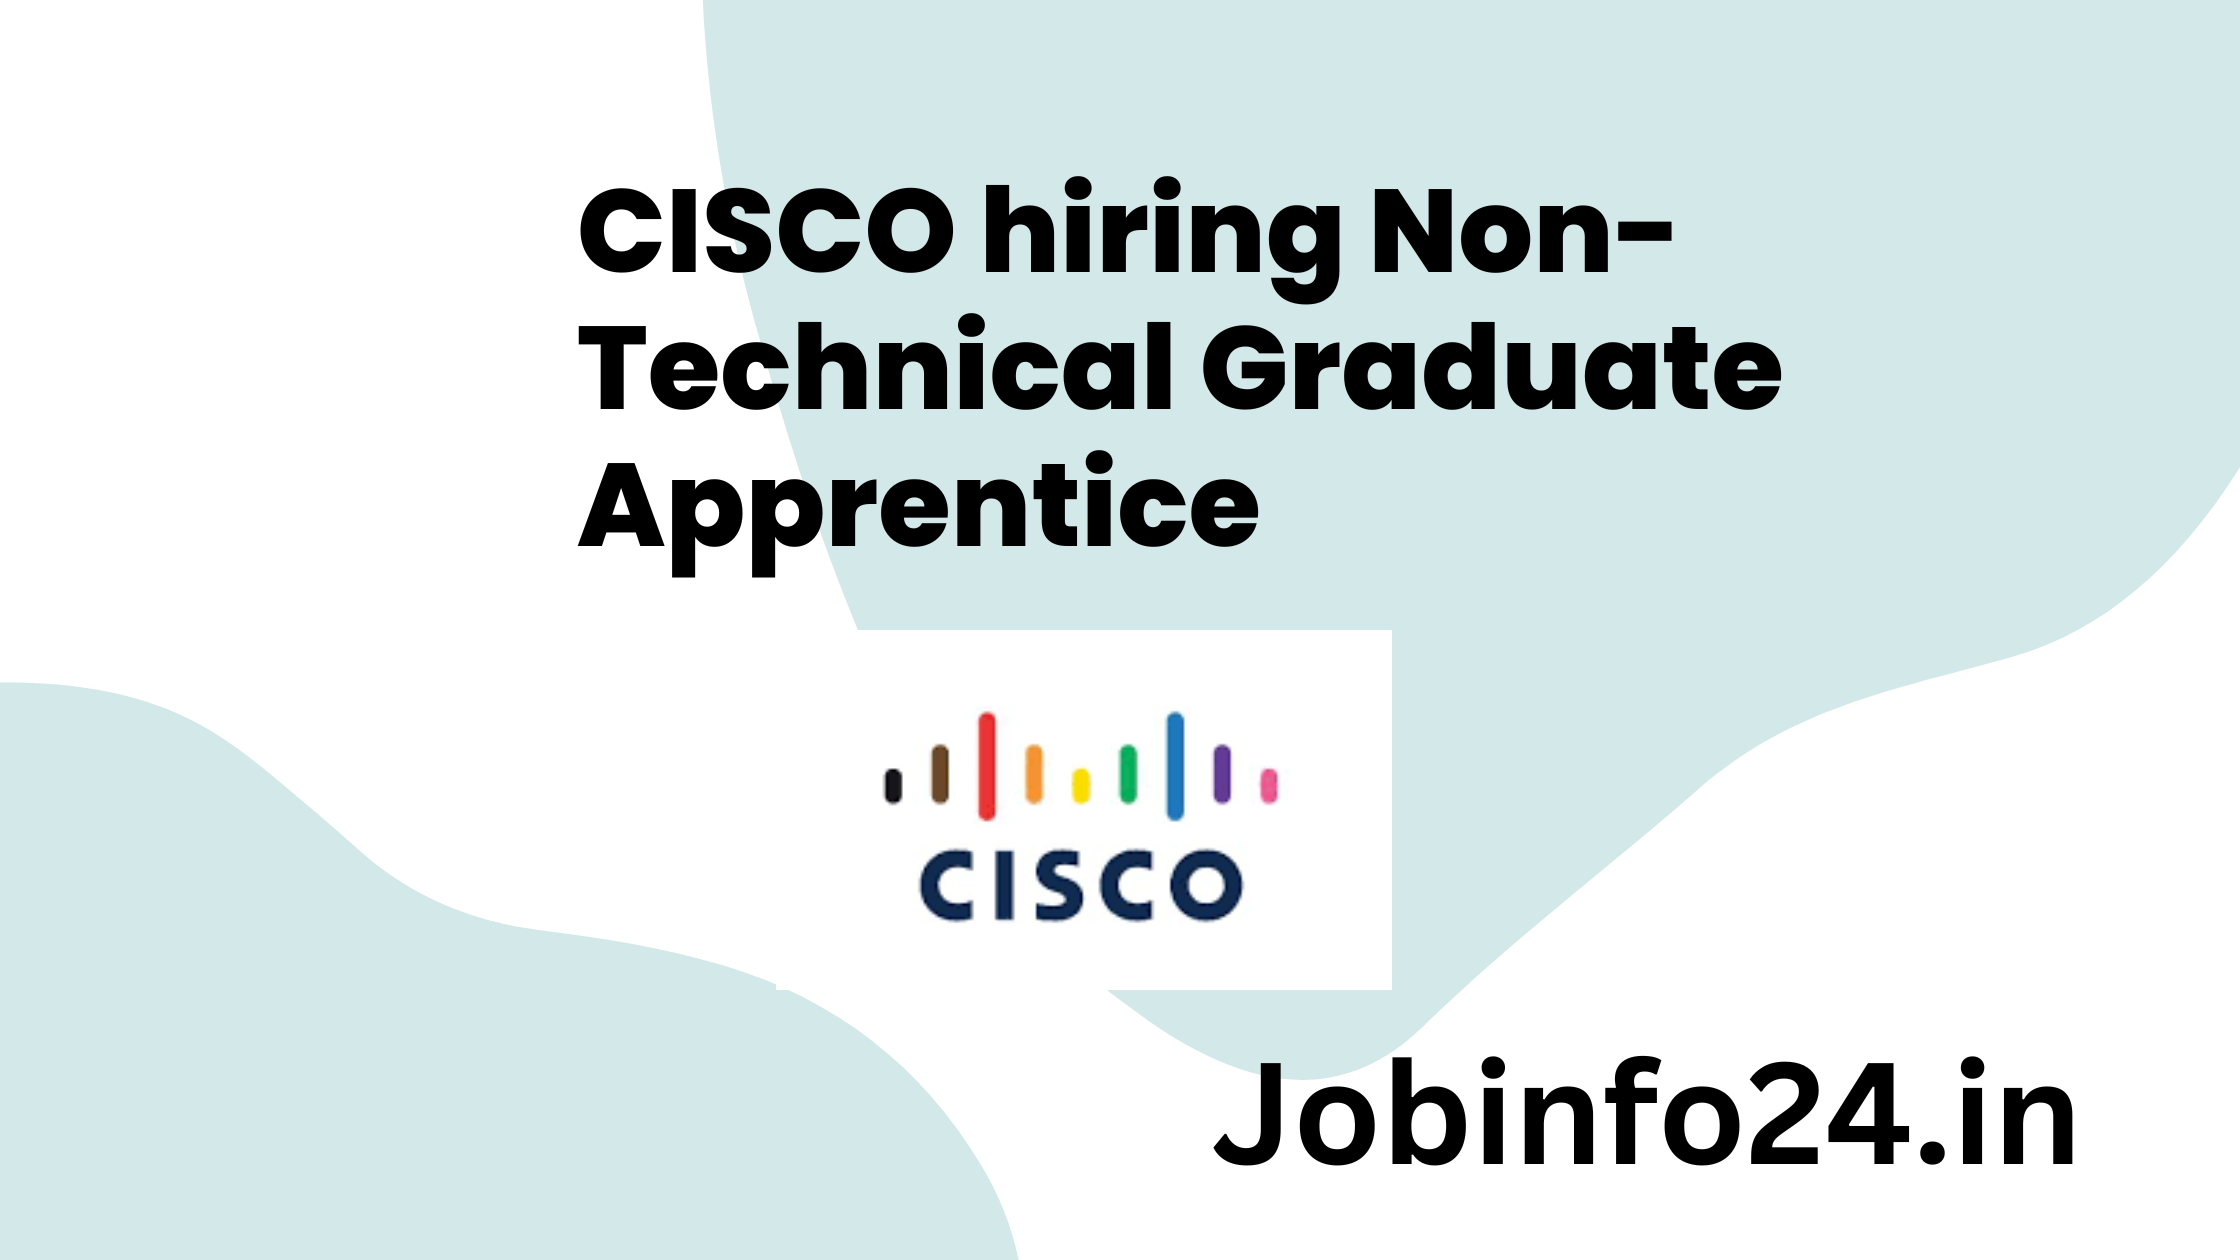 CISCO hiring Non-Technical Graduate Apprentice